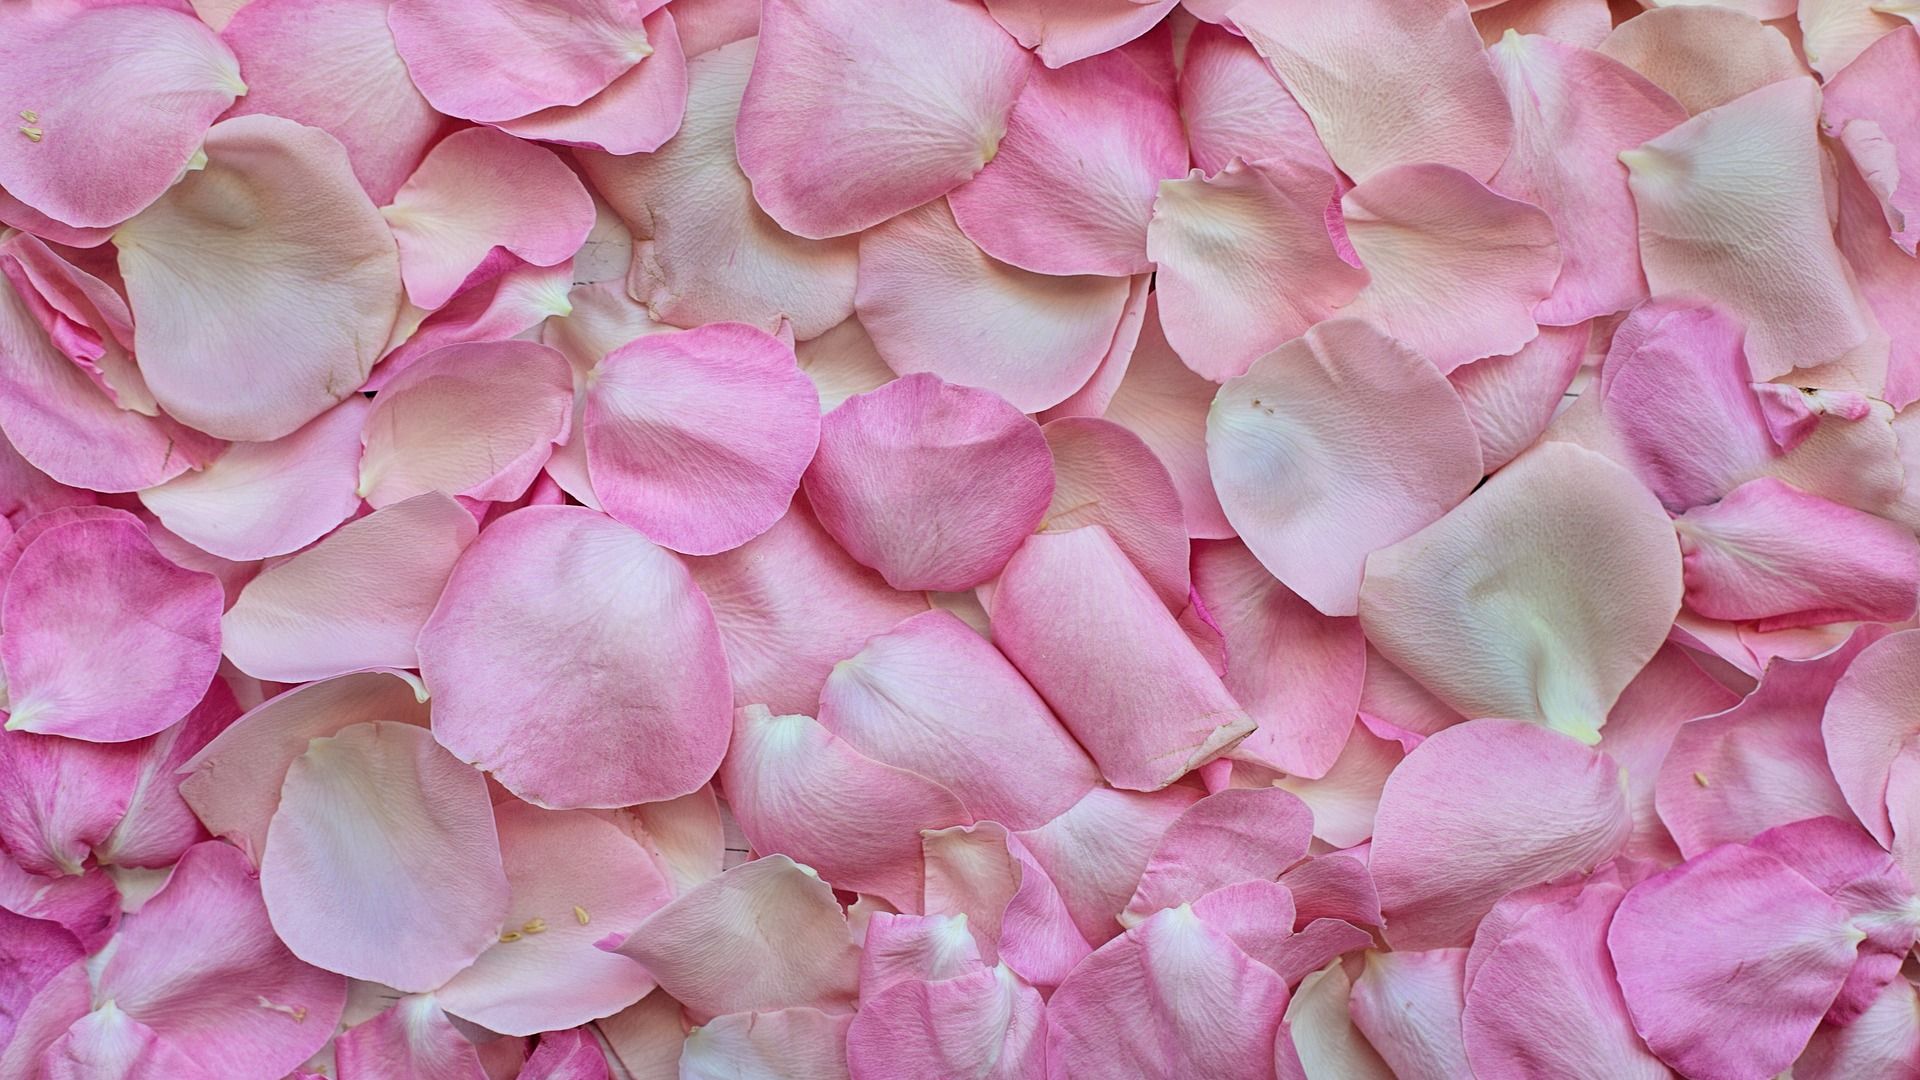 Hd Wallpaper Of Pink Rose Petals - HD Wallpaper 